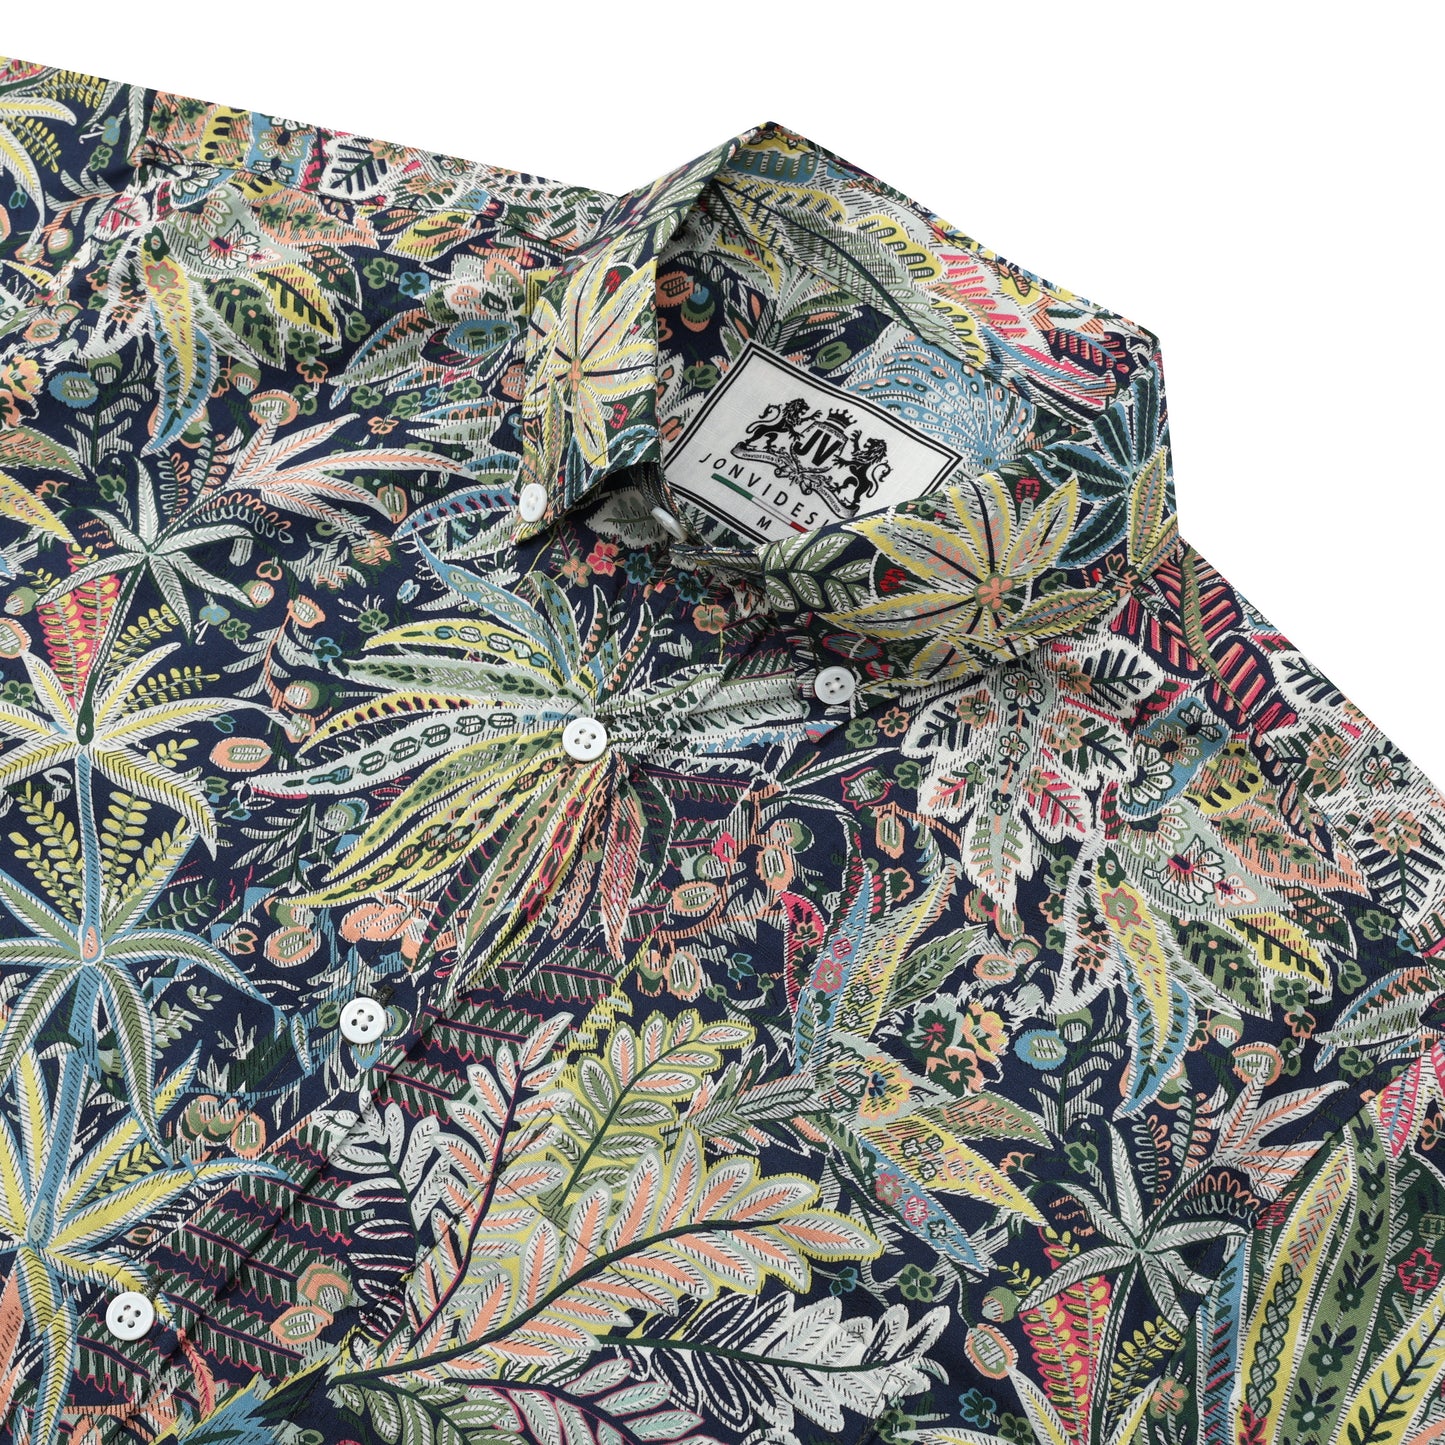 Aloha Tropical Style Button Short Sleeve Shirt